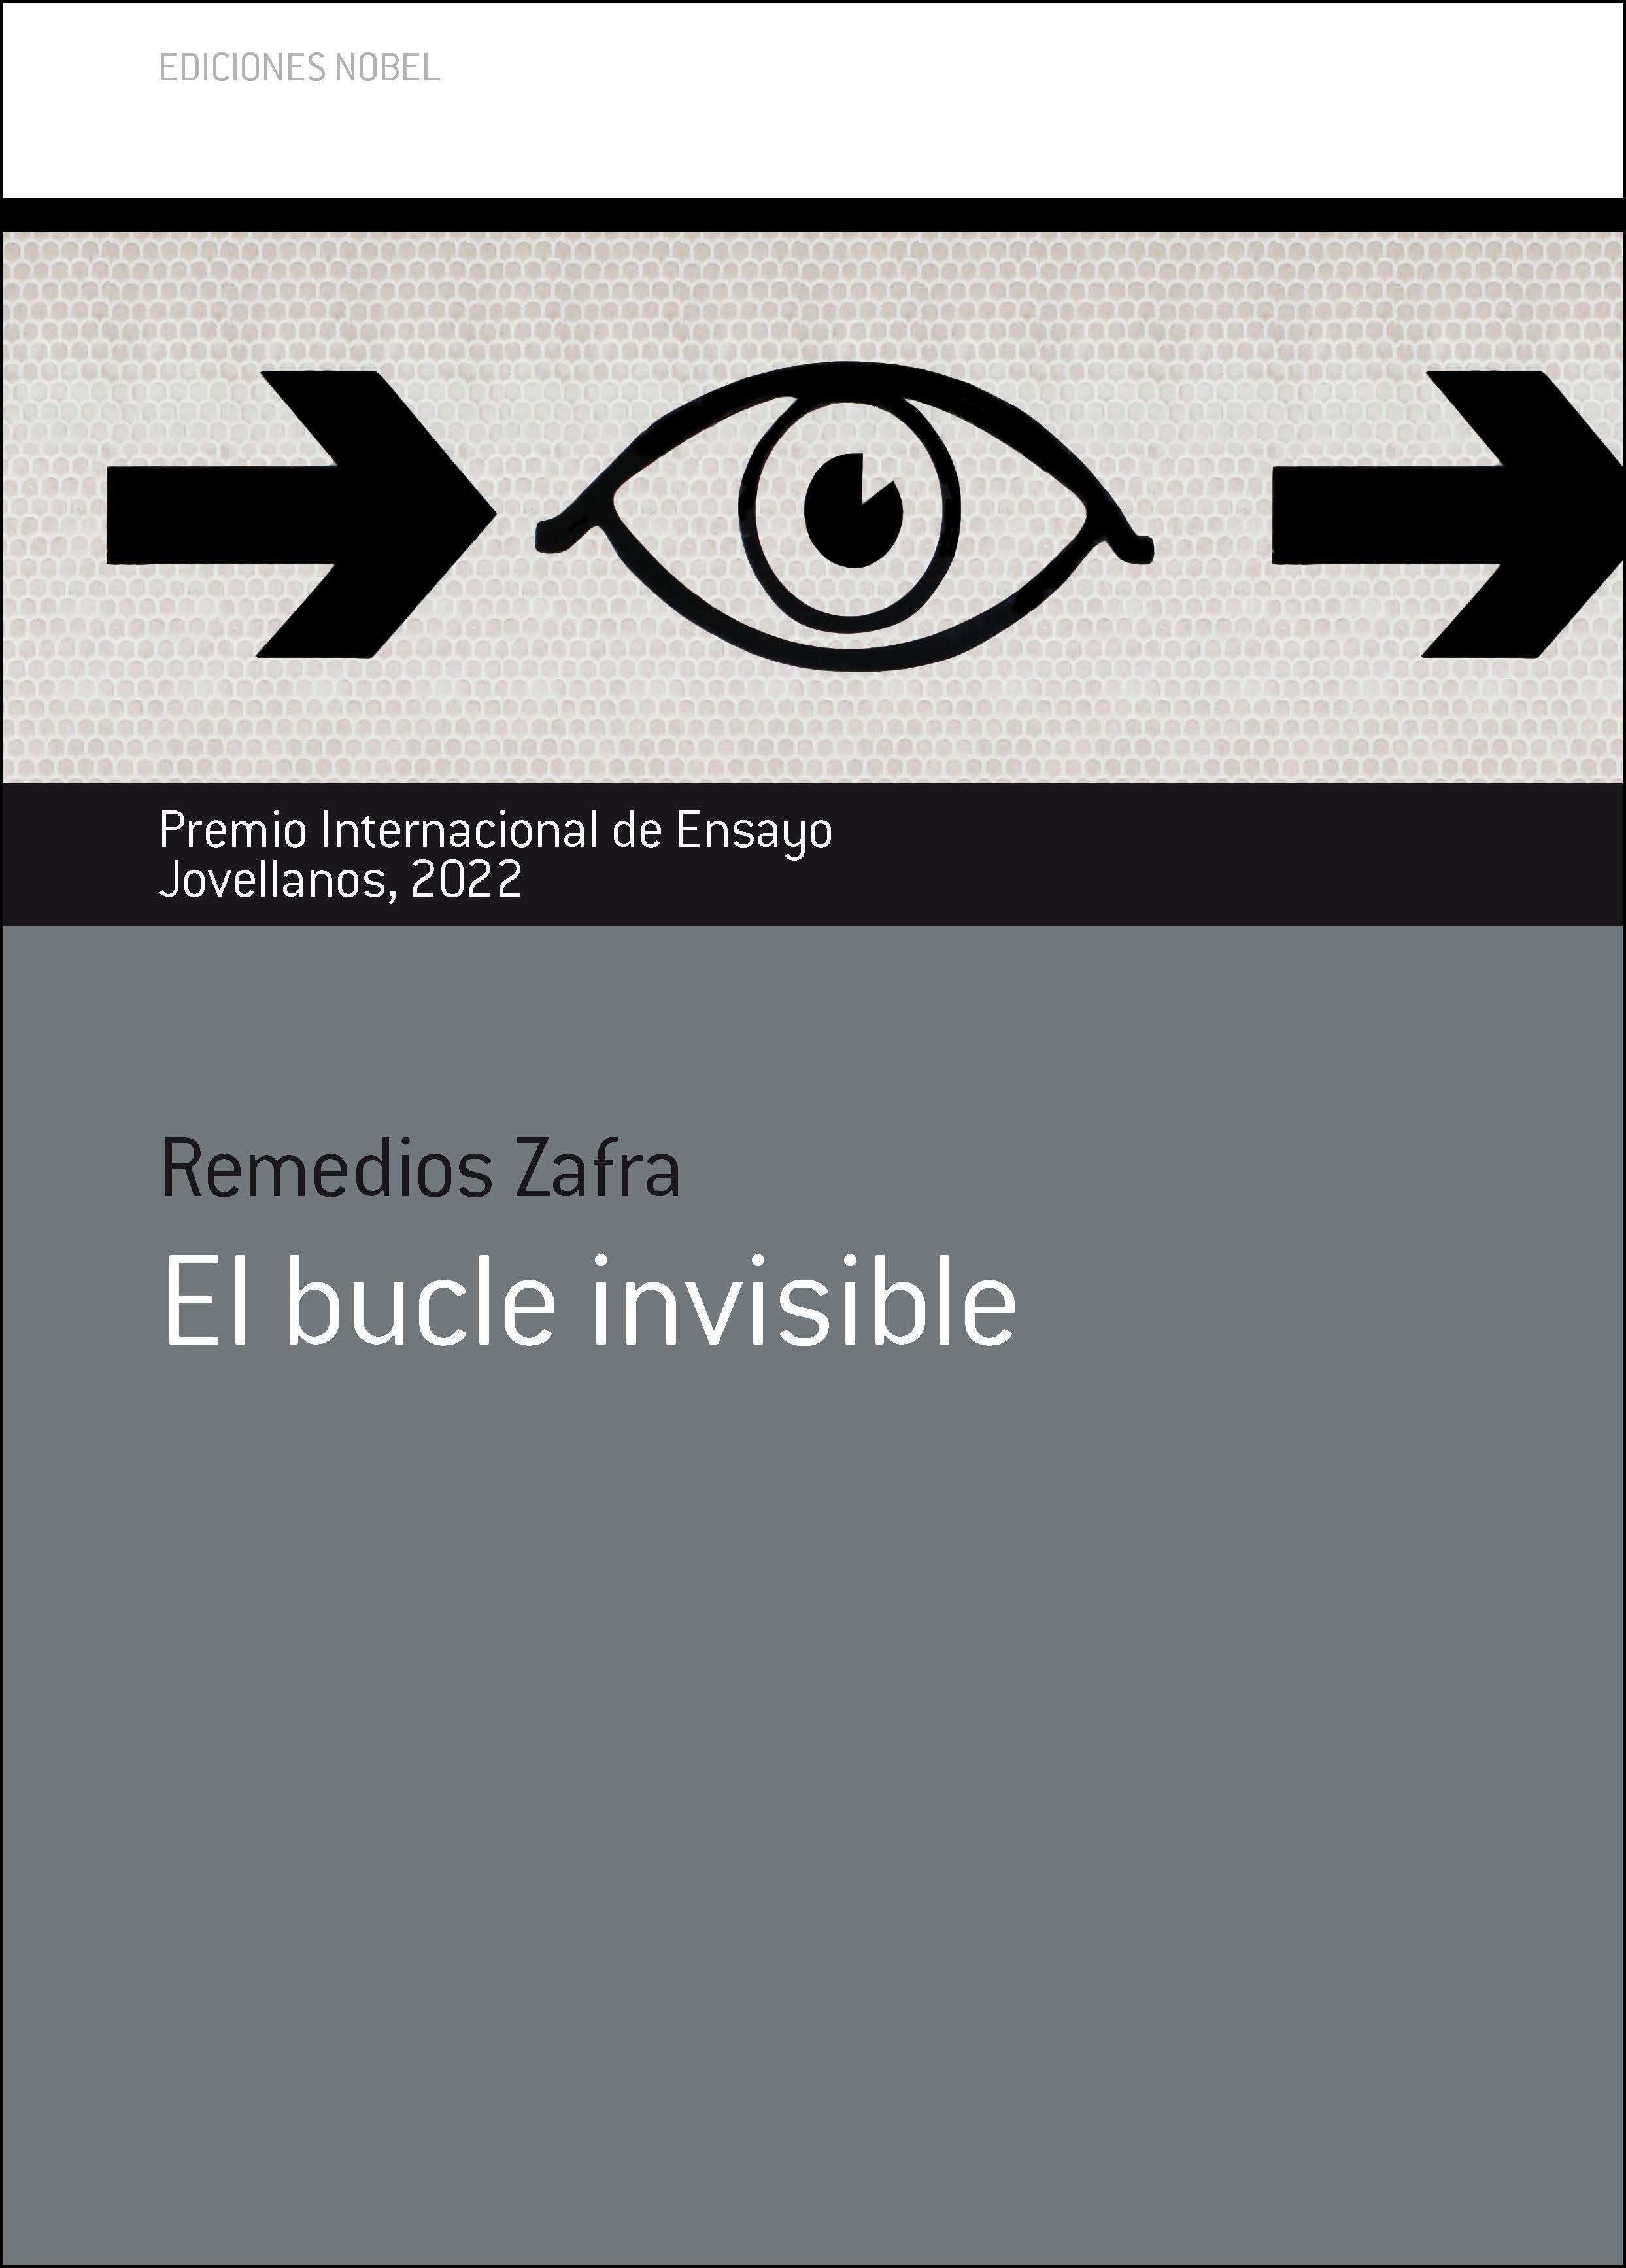 El bucle invisible con Remedios Zafra